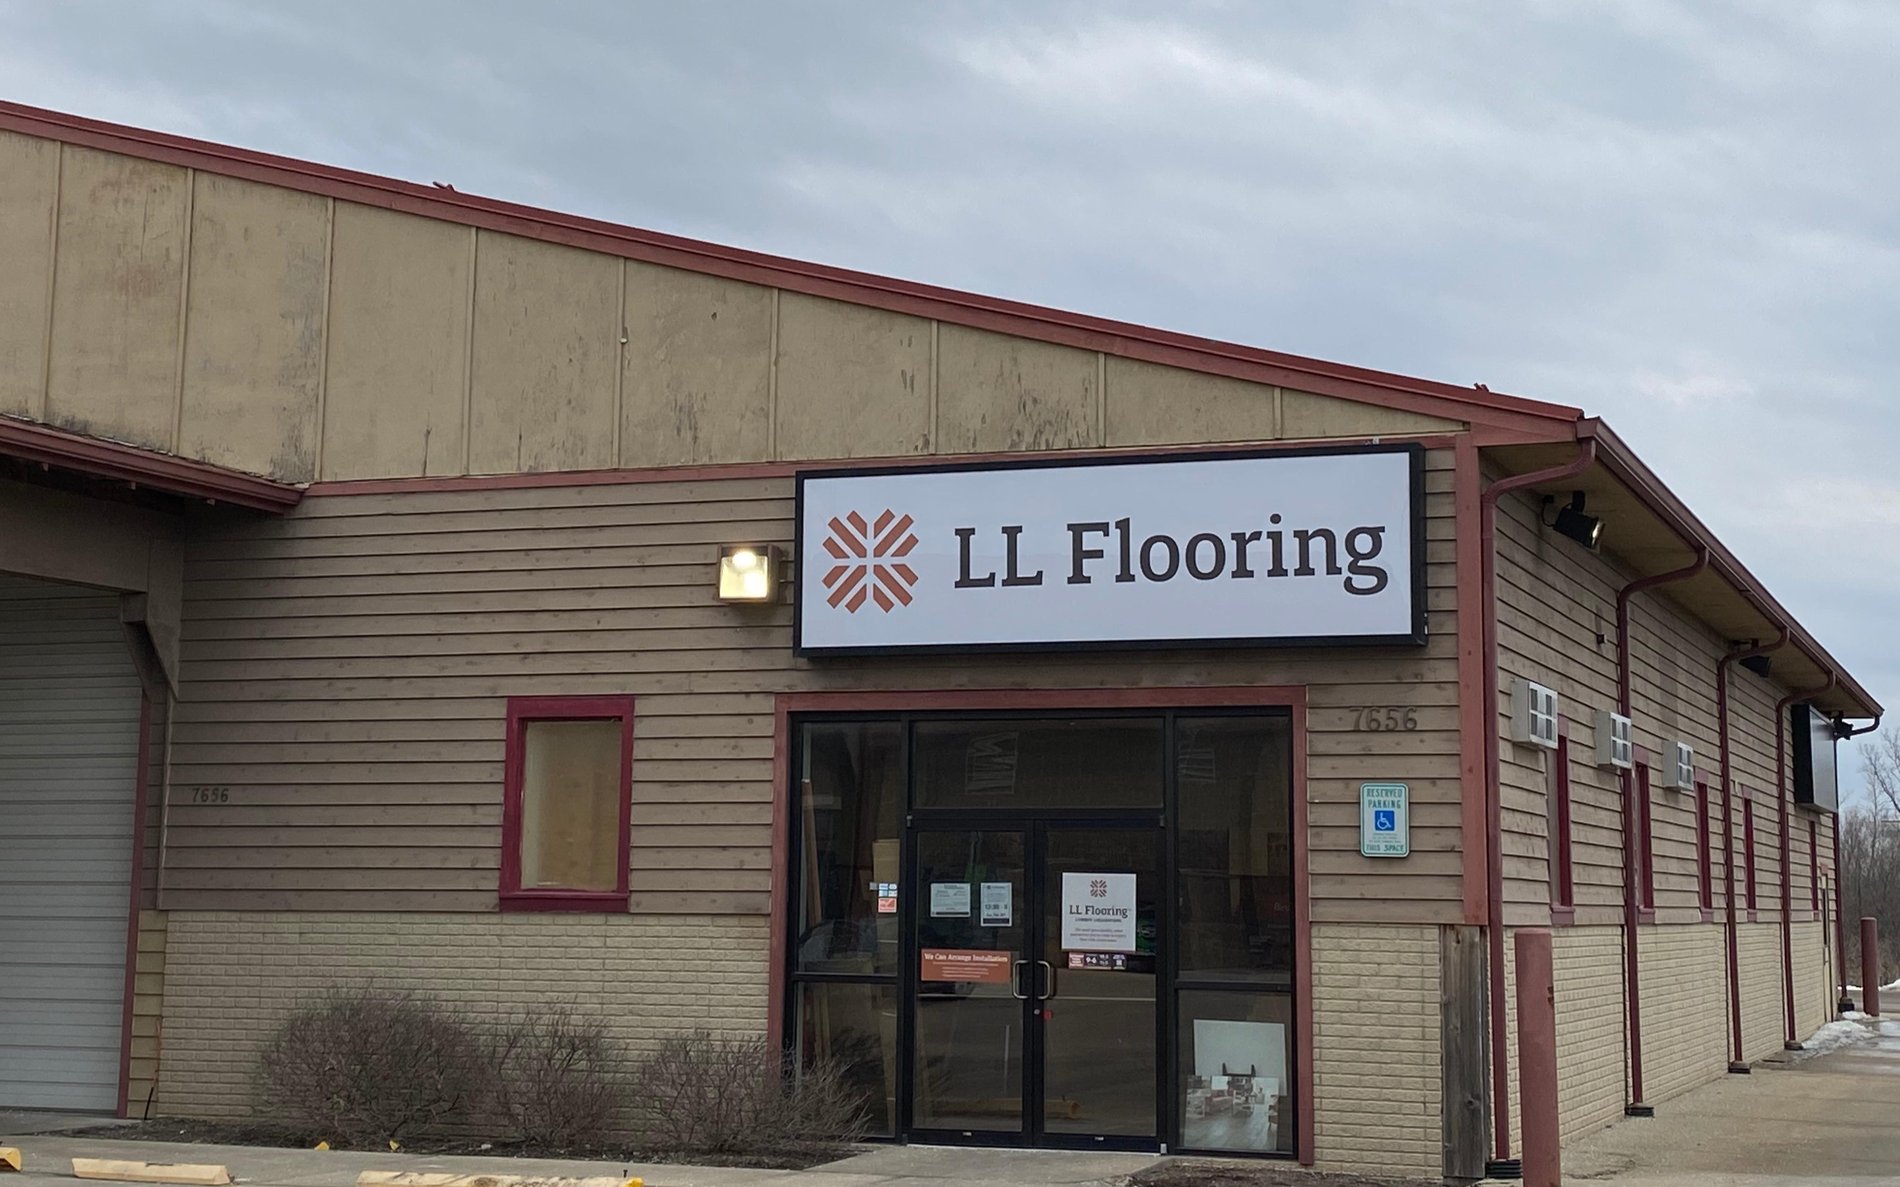 LL Flooring #1067 Kenosha | 7650 75th Street | Storefront